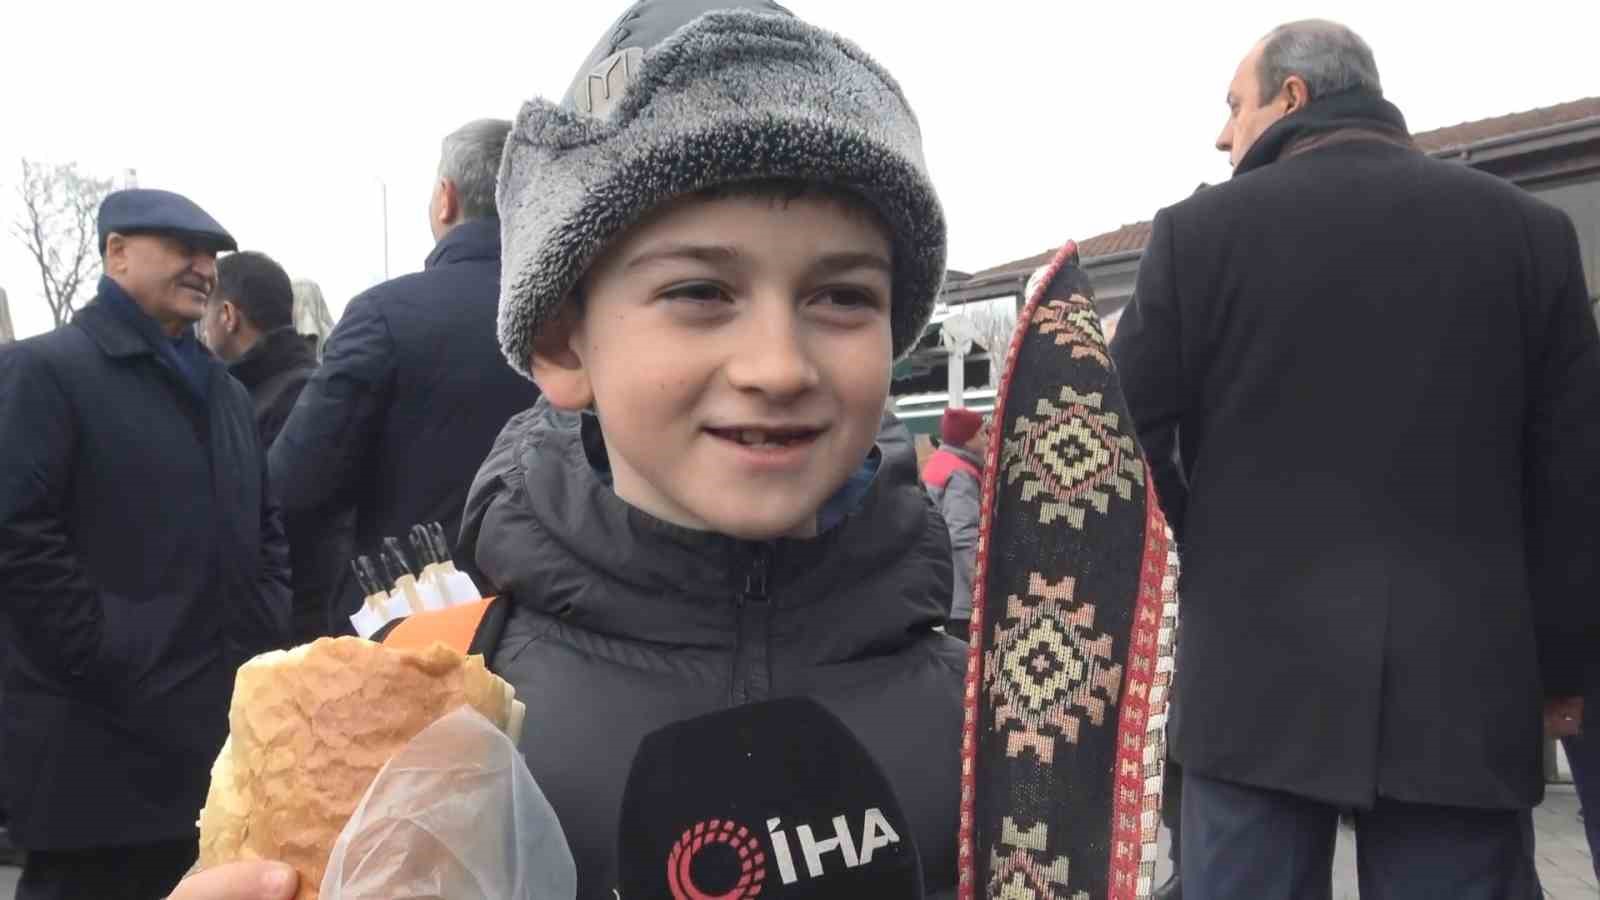 Bursa’da 5 bin kişiye hamsi ekmek ücretsiz dağıtıldı